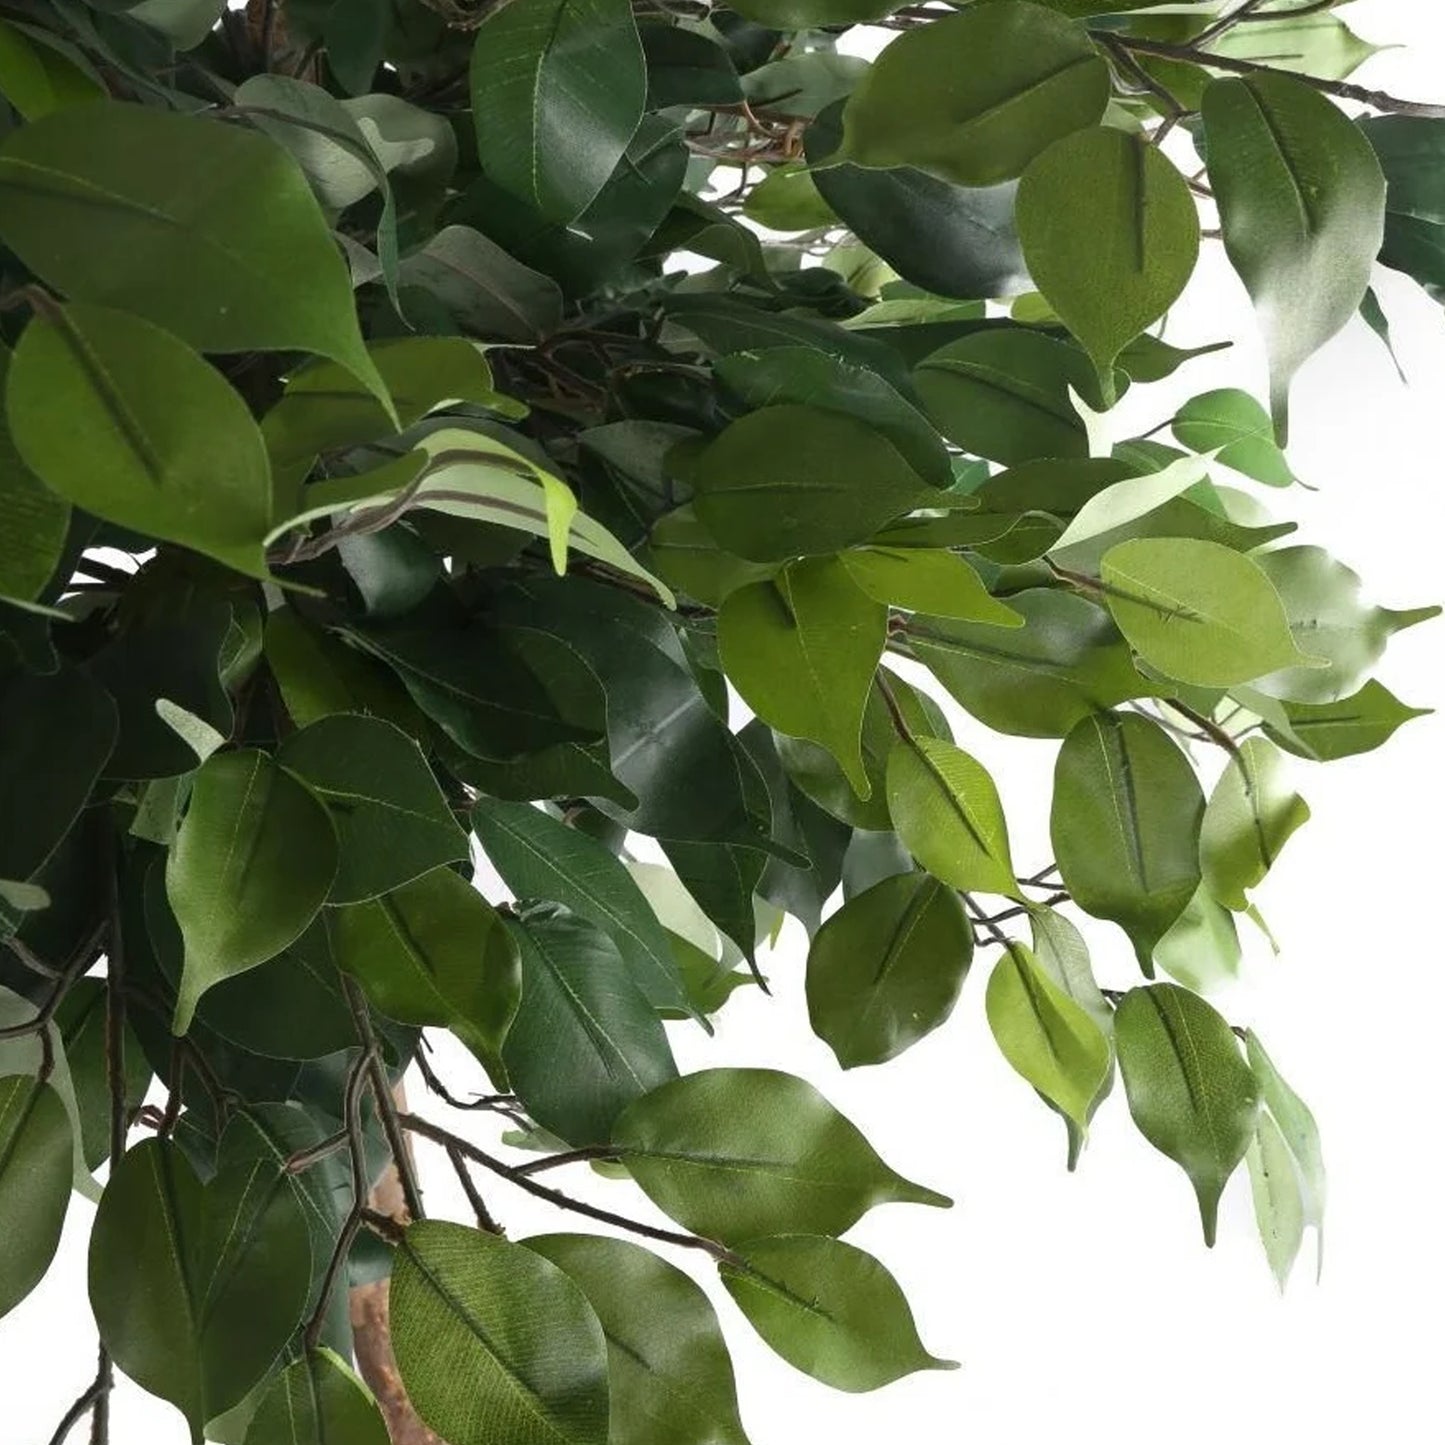 Ficus benjamina Danielle